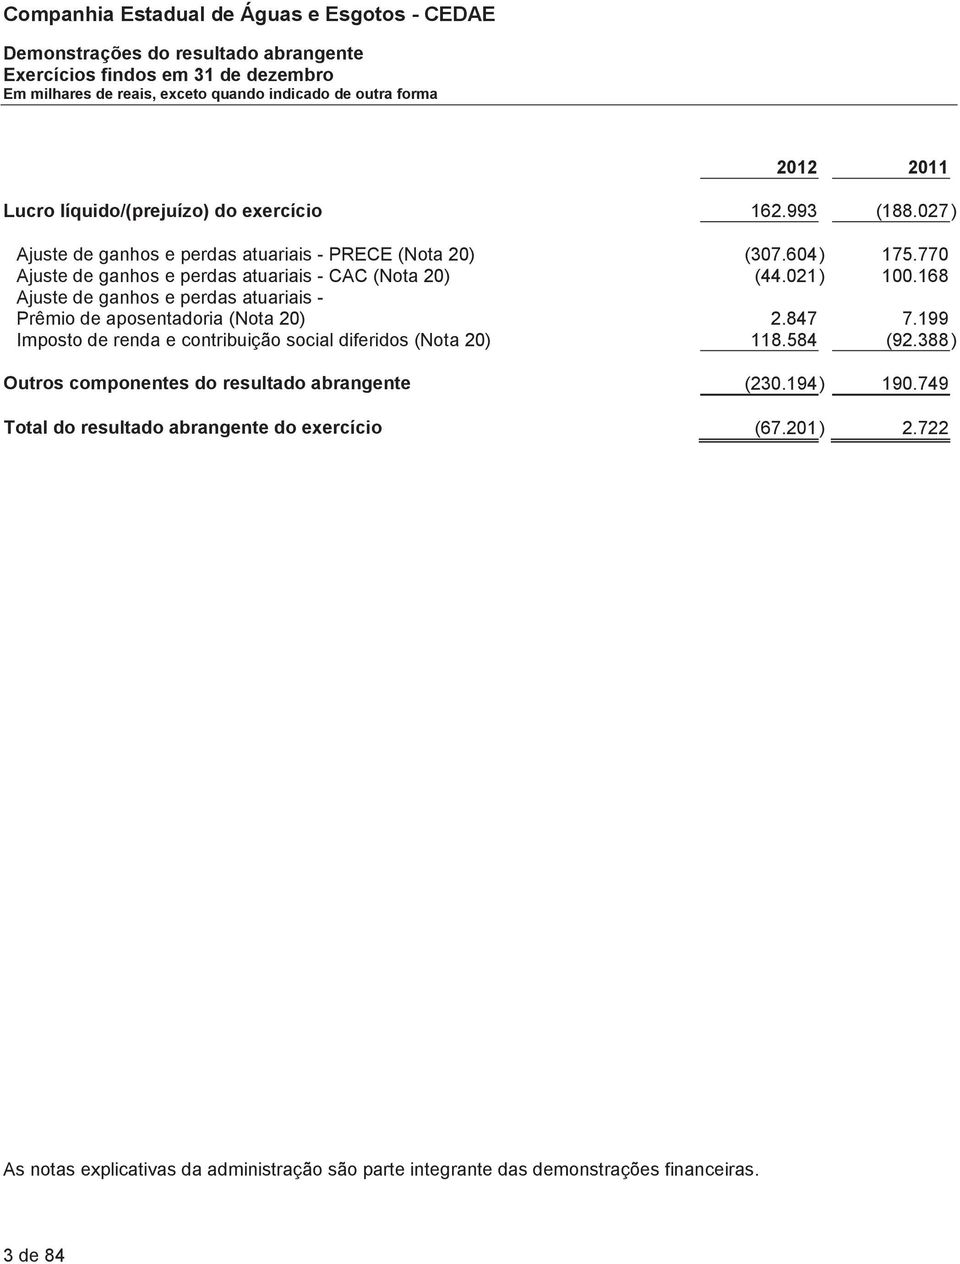 168 Ajuste de ganhos e perdas atuariais - Prêmio de aposentadoria (Nota 20) 2.847 7.199 Imposto de renda e contribuição social diferidos (Nota 20) 118.584 (92.